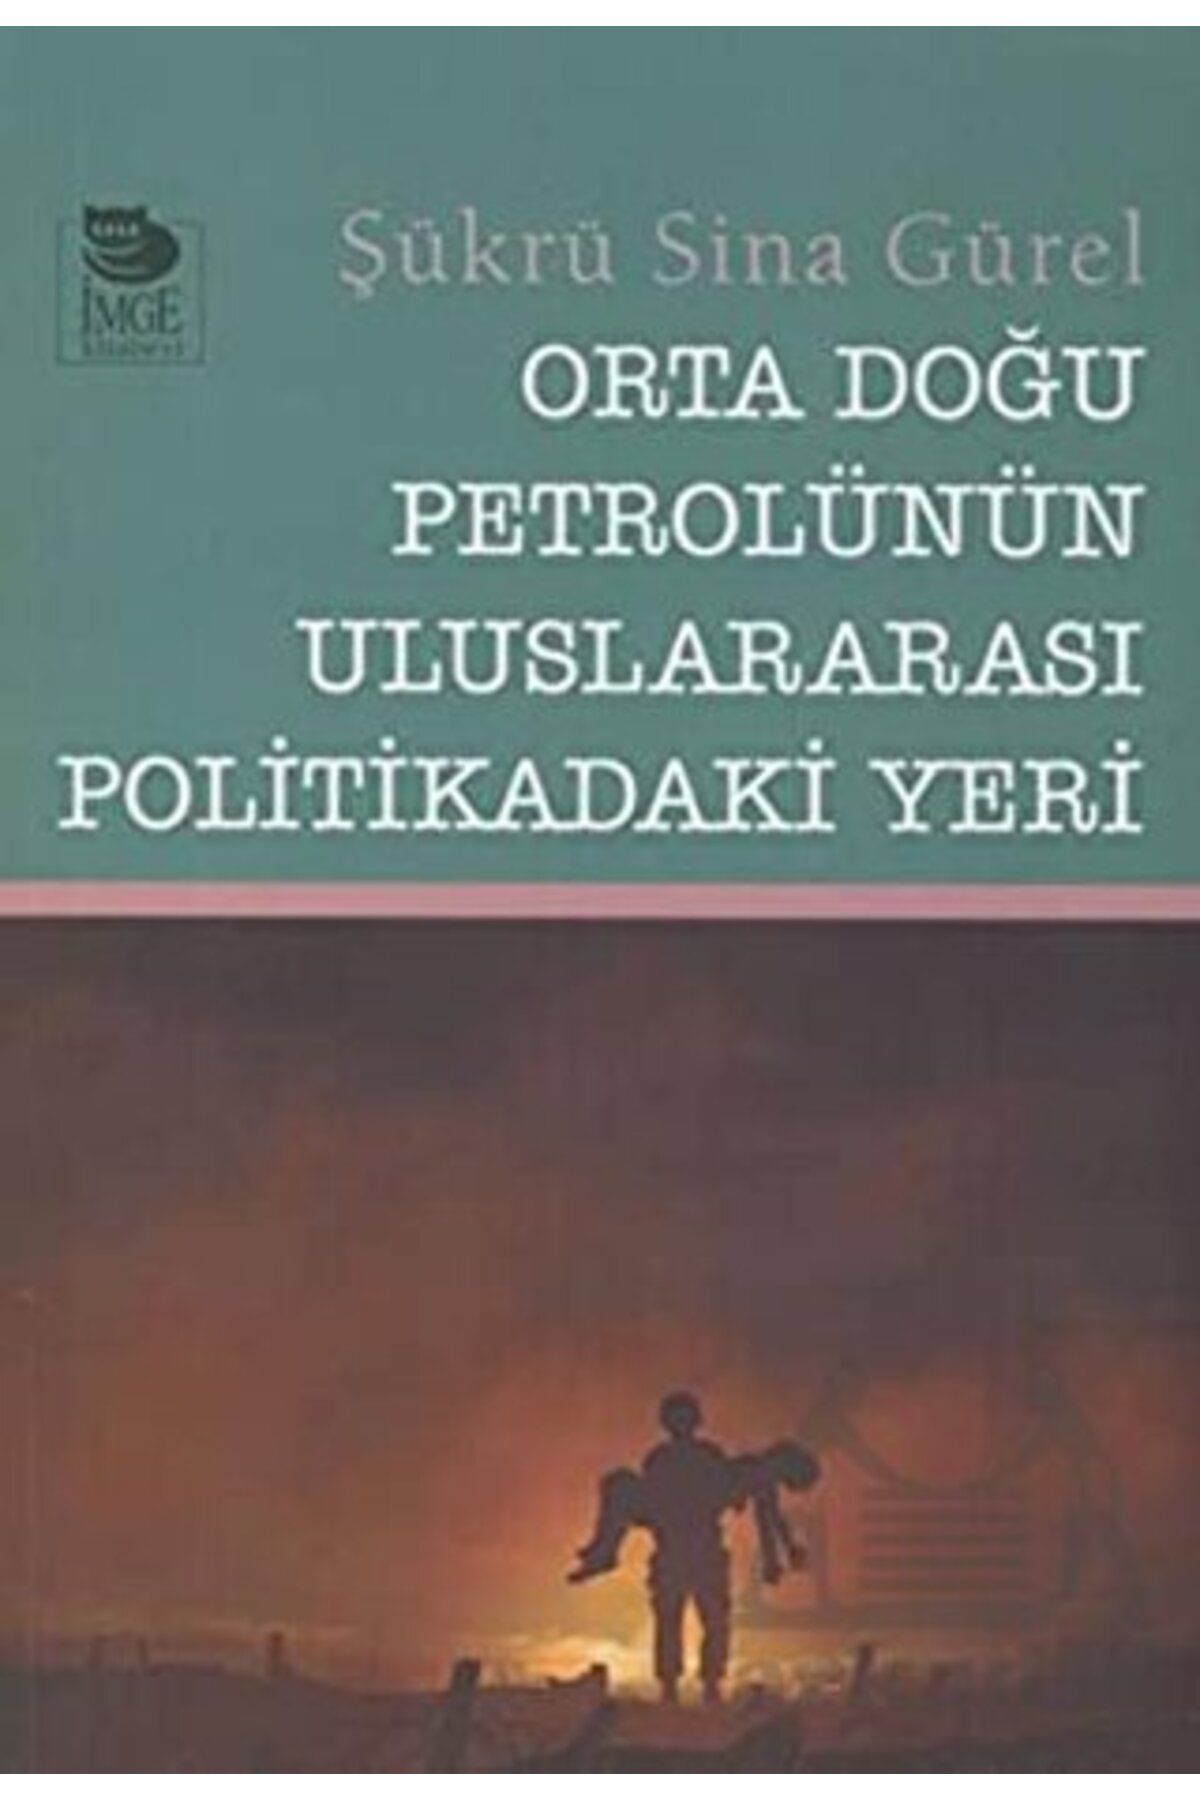 İmge Kitabevi Yayınları Orta Doğu Petrolünün Uluslararası Politikadaki Yeri